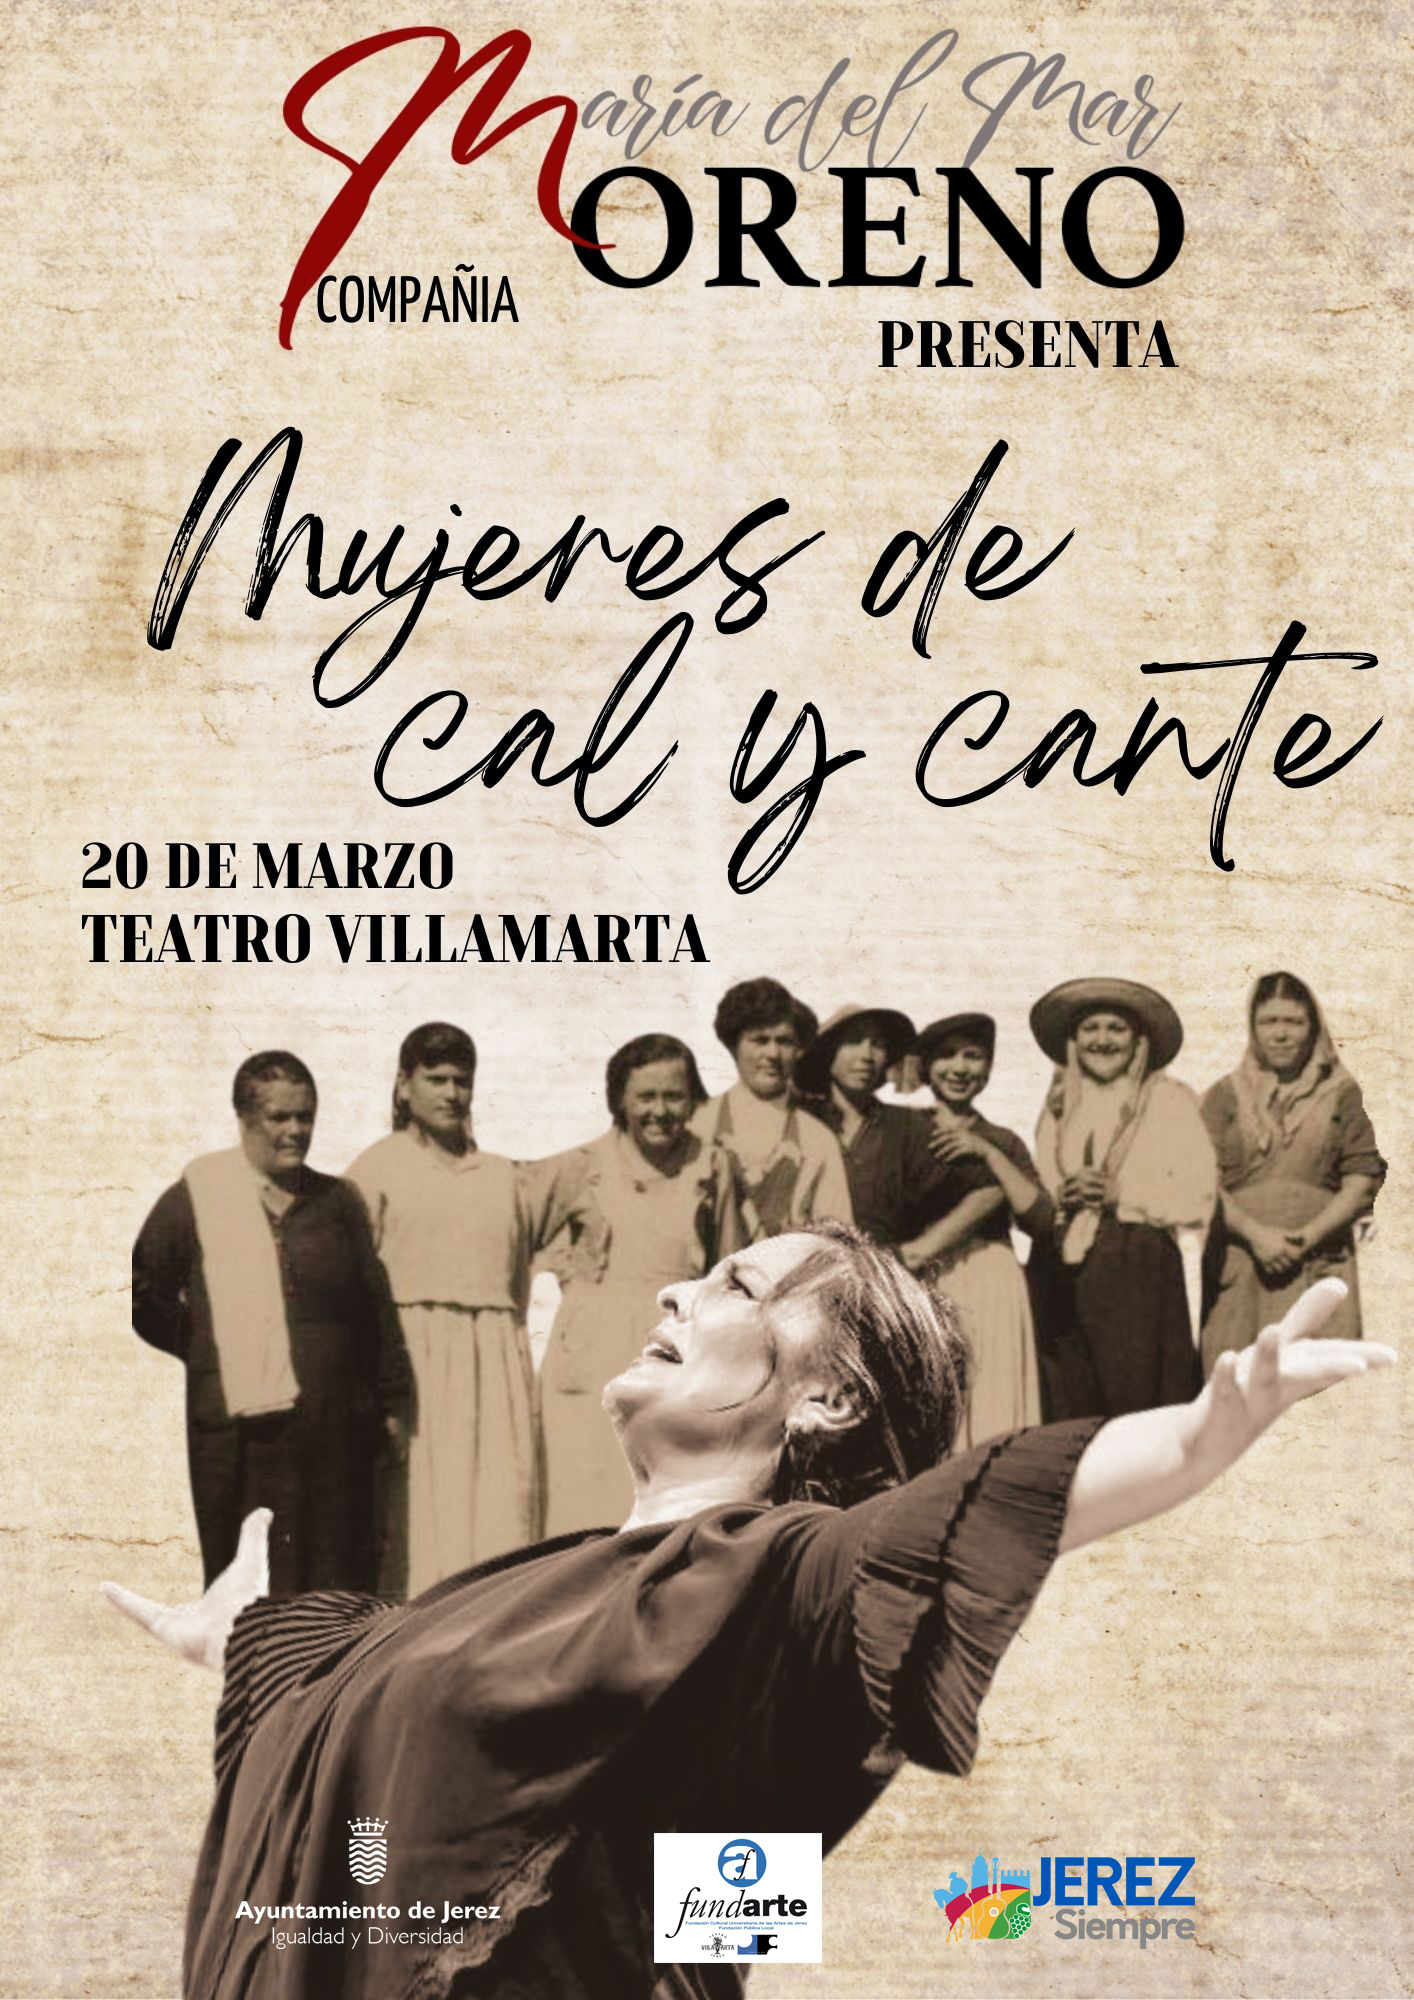 Cartel Espectáculo "Mujeres de Cal y Cante"